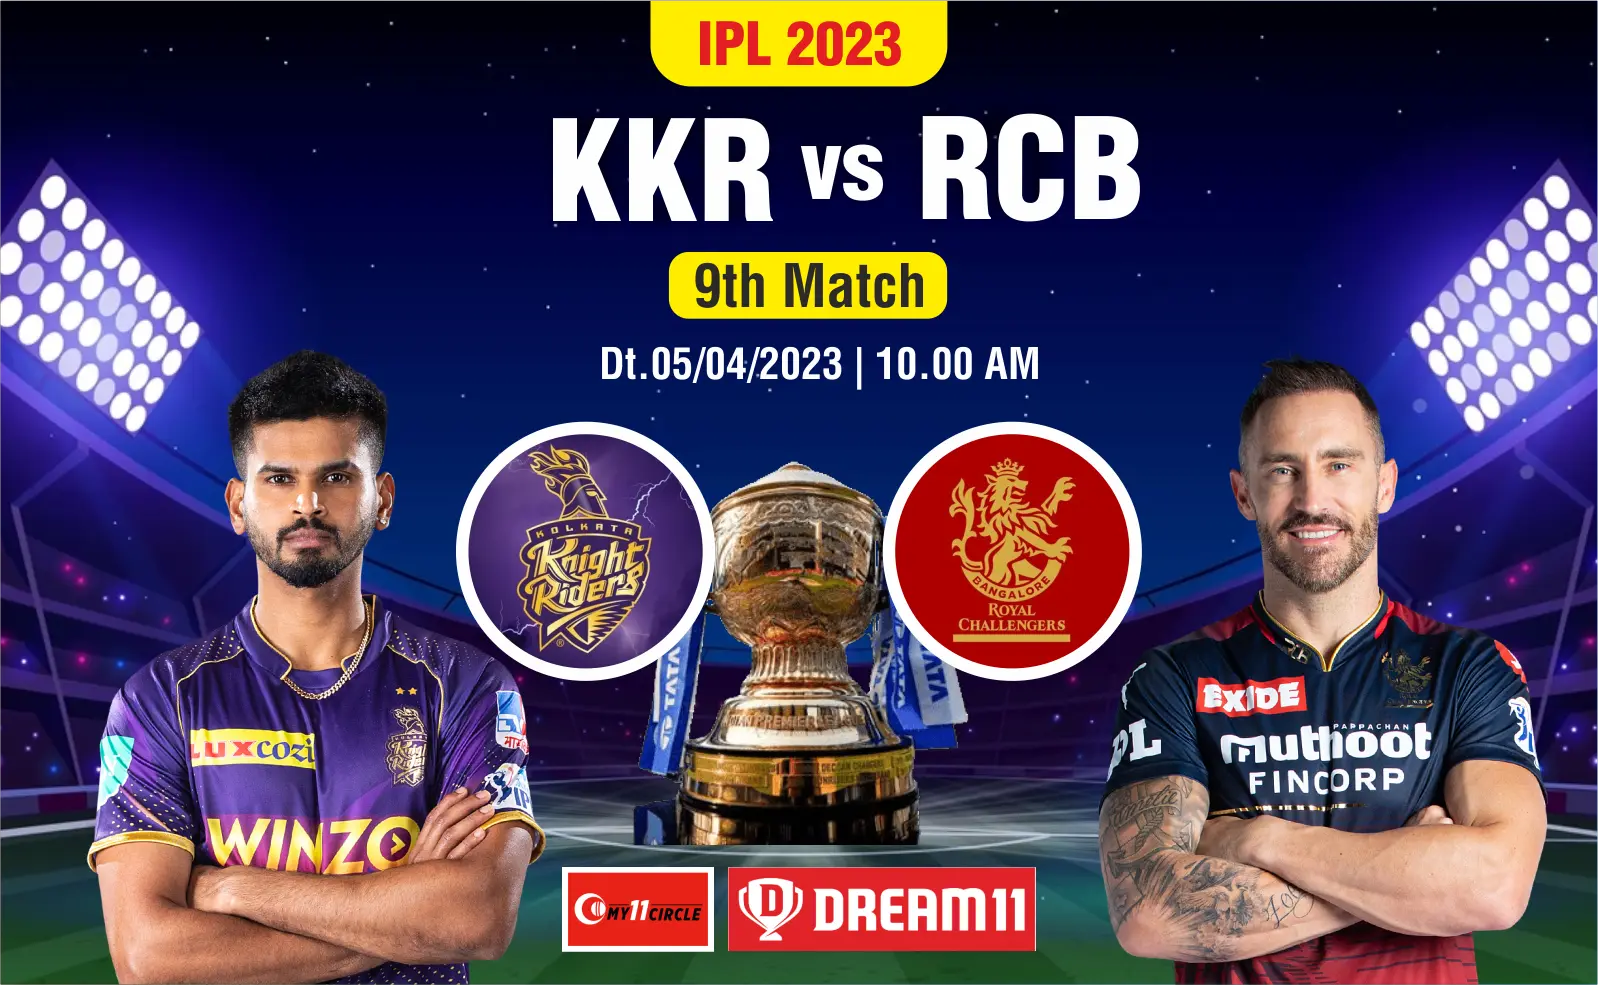 KKR vs RCB IPL 2023 Match Live